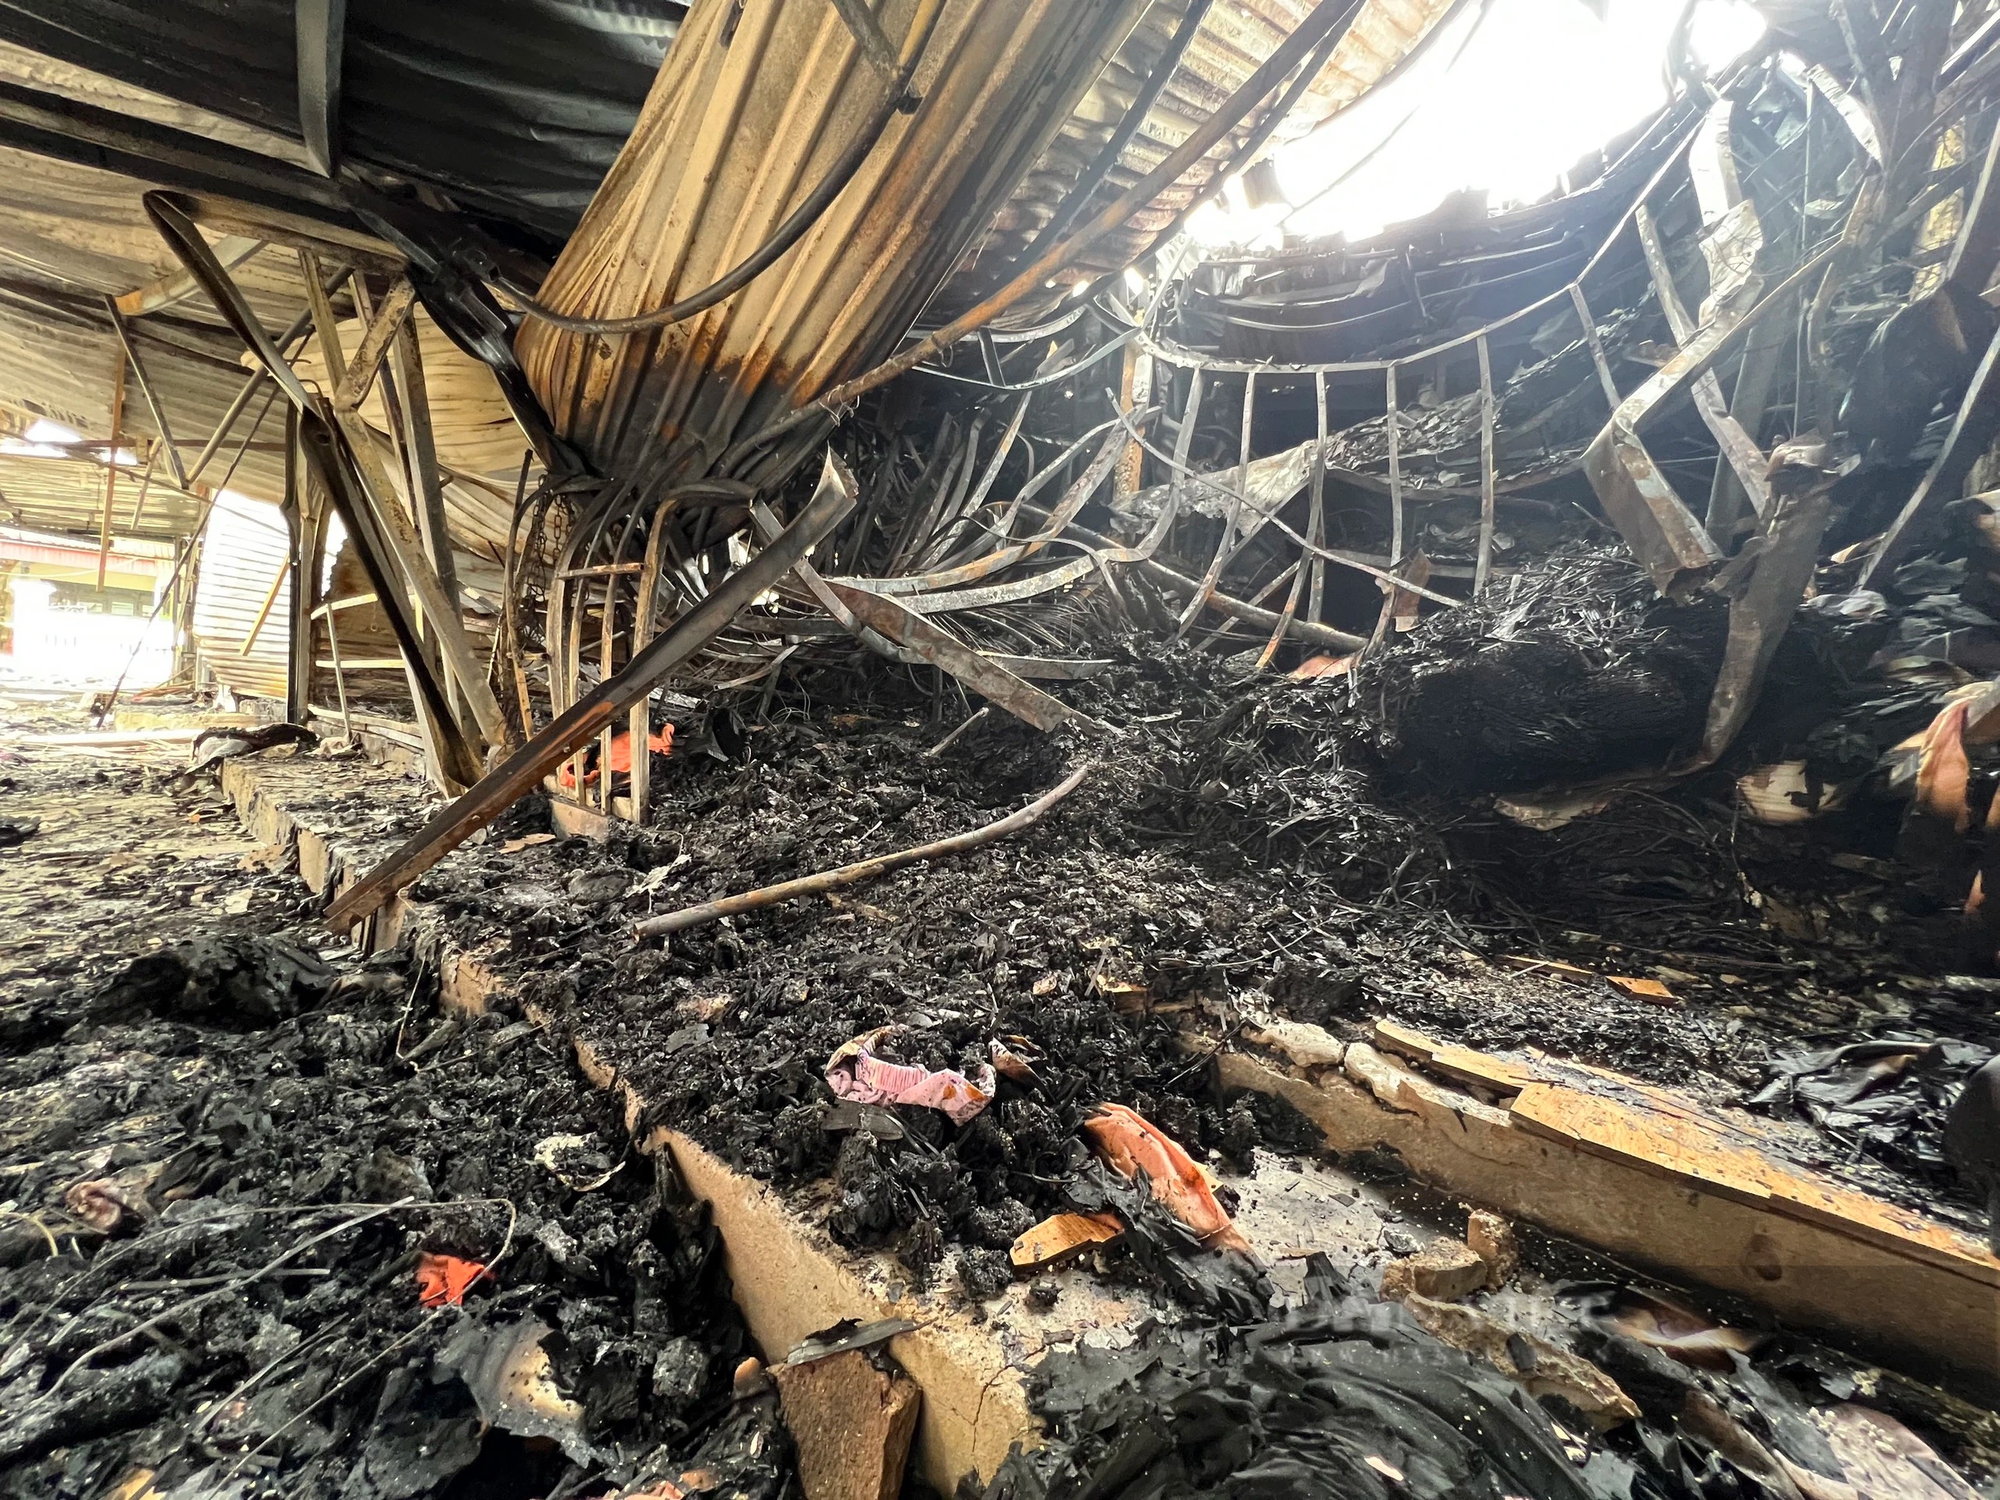 Khung cảnh tan hoang sau vụ cháy chợ Hàng Trạm, Hòa Bình- Ảnh 7.